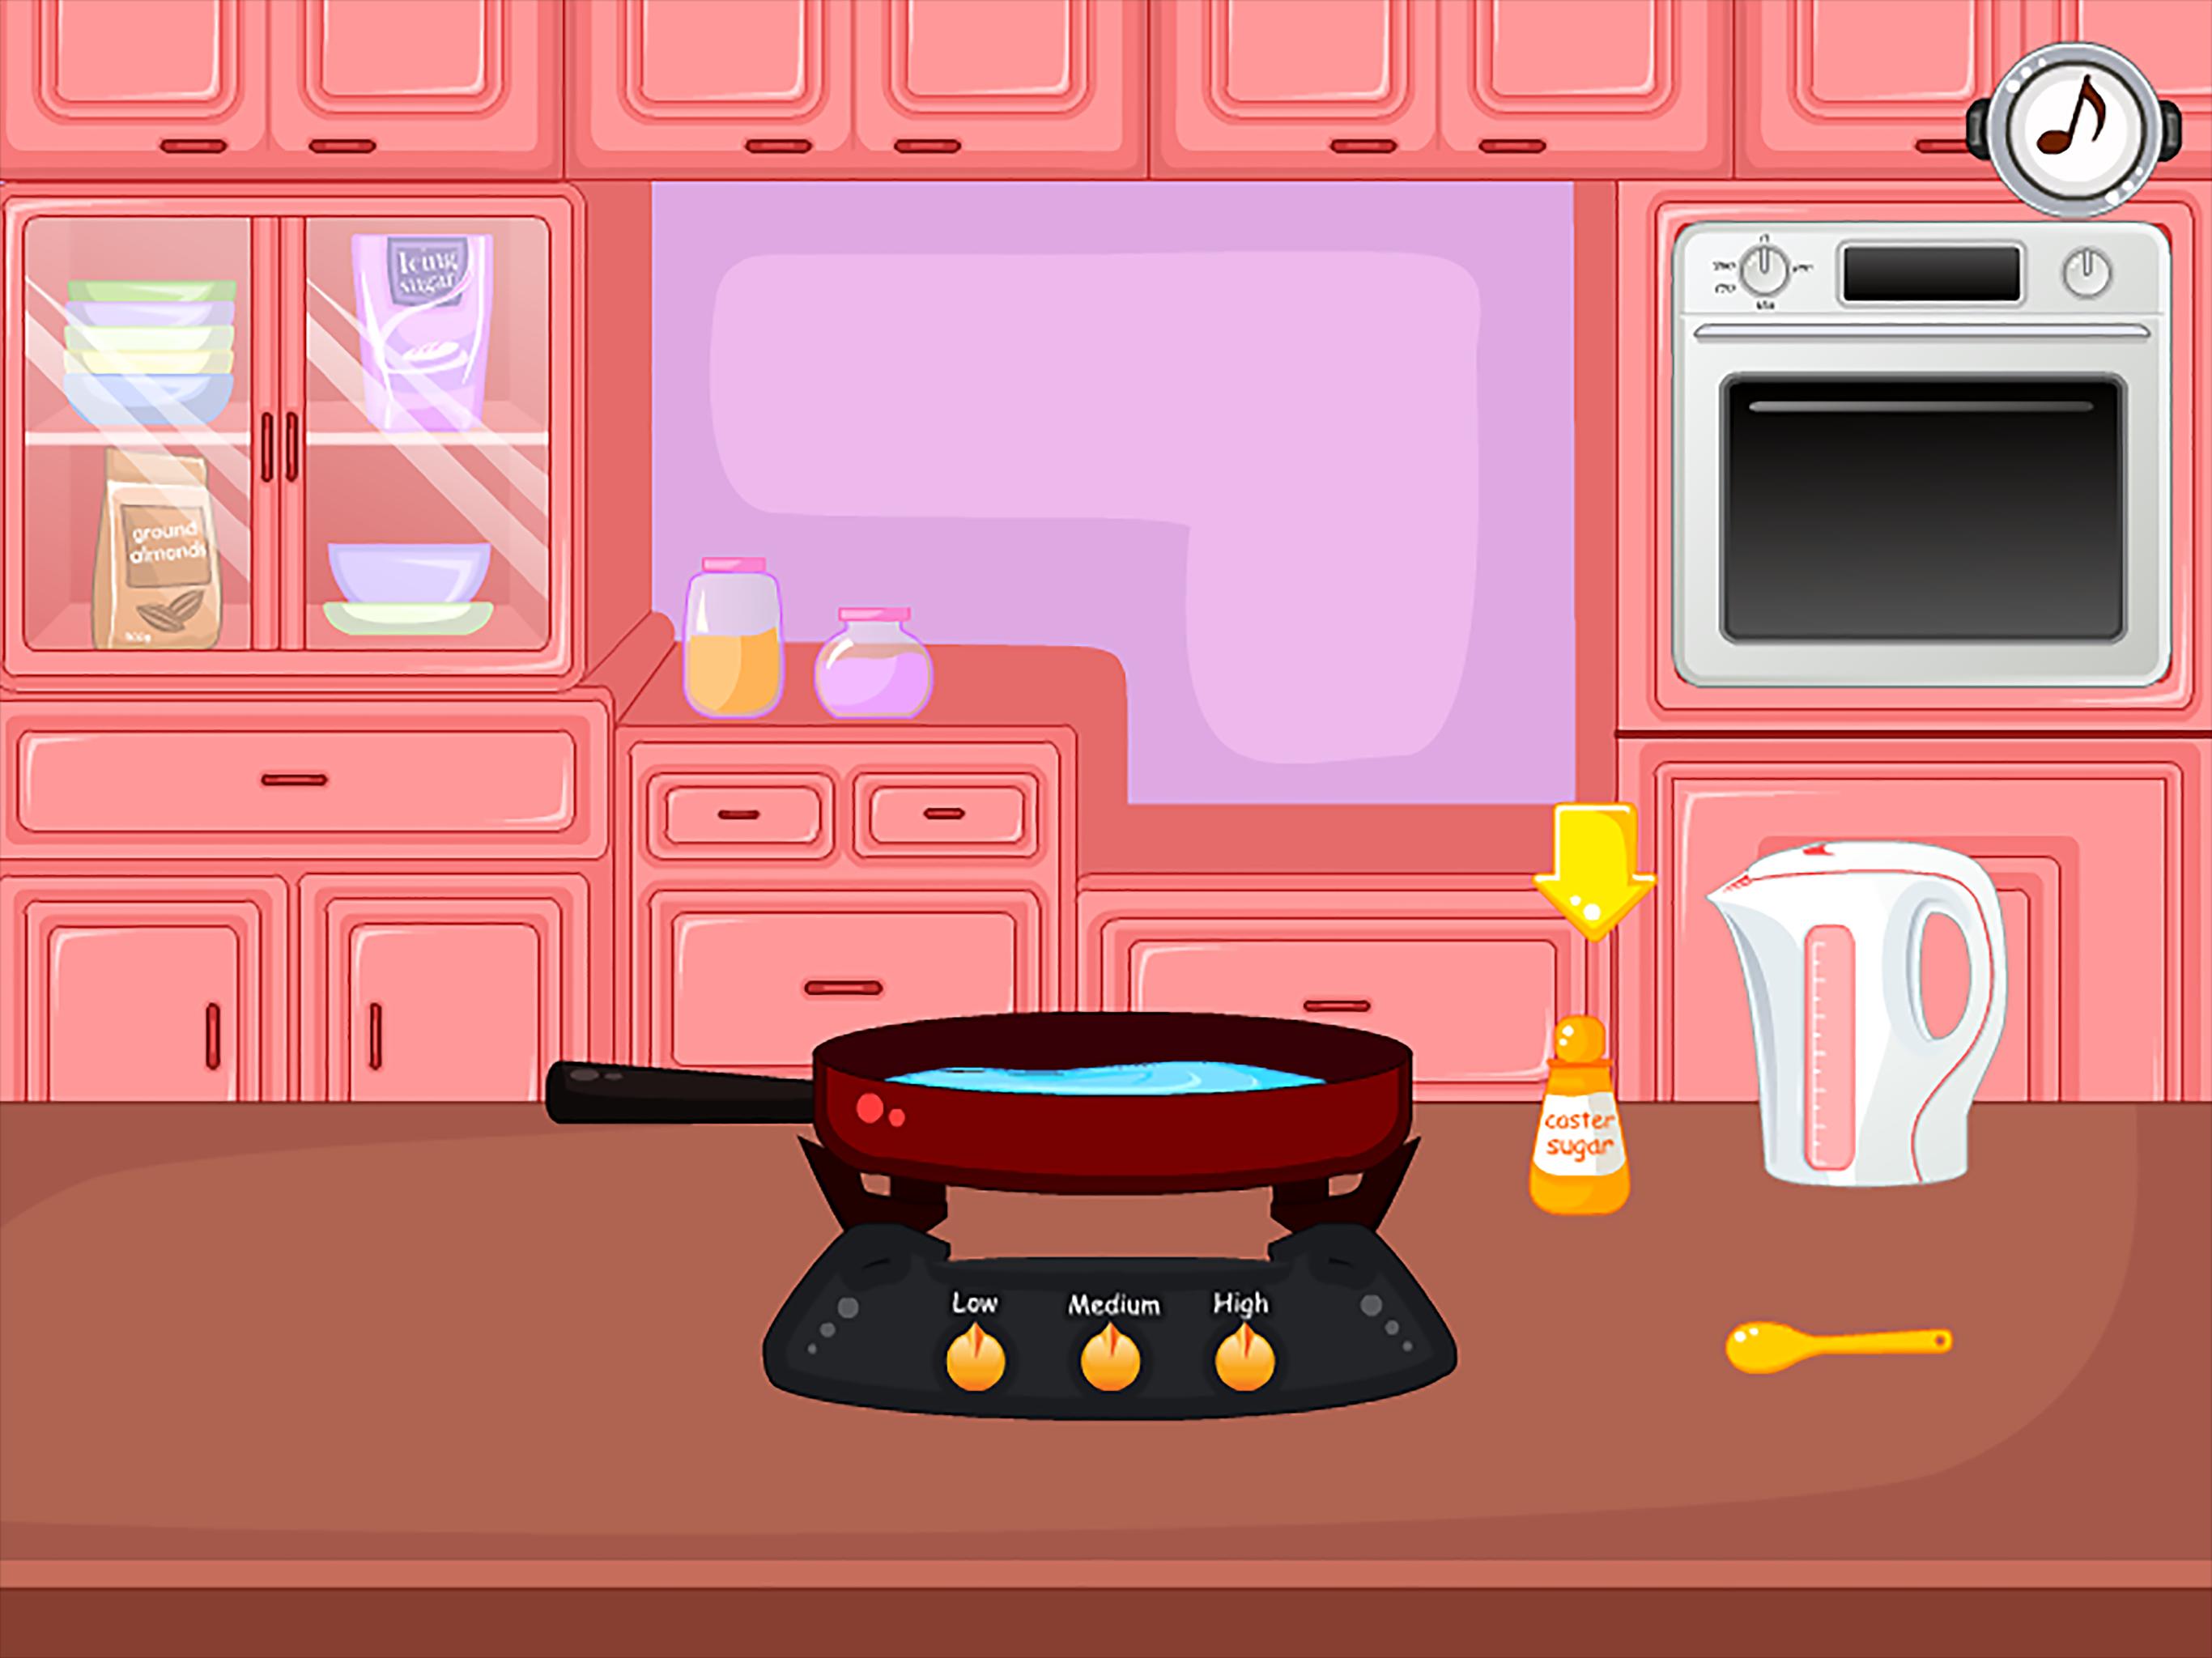 Скачай 2 версии игры про спагетти. Кухня скрины. Кухня Скриншоты. Готовка макарон игра. Игра про спагетти.